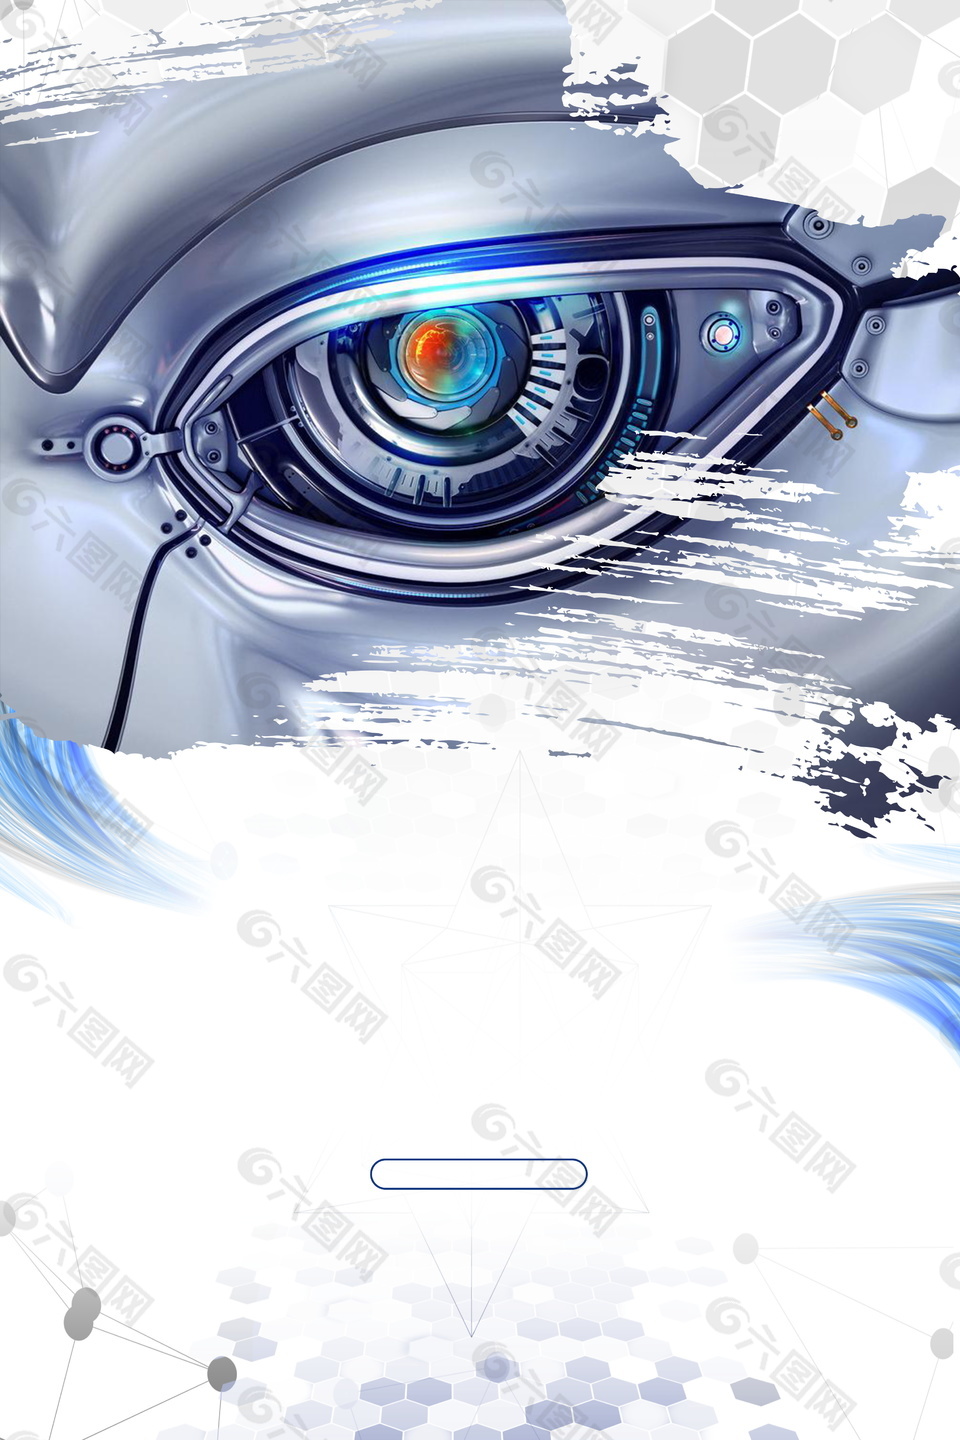 酷炫灰色智能机器人眼睛广告背景